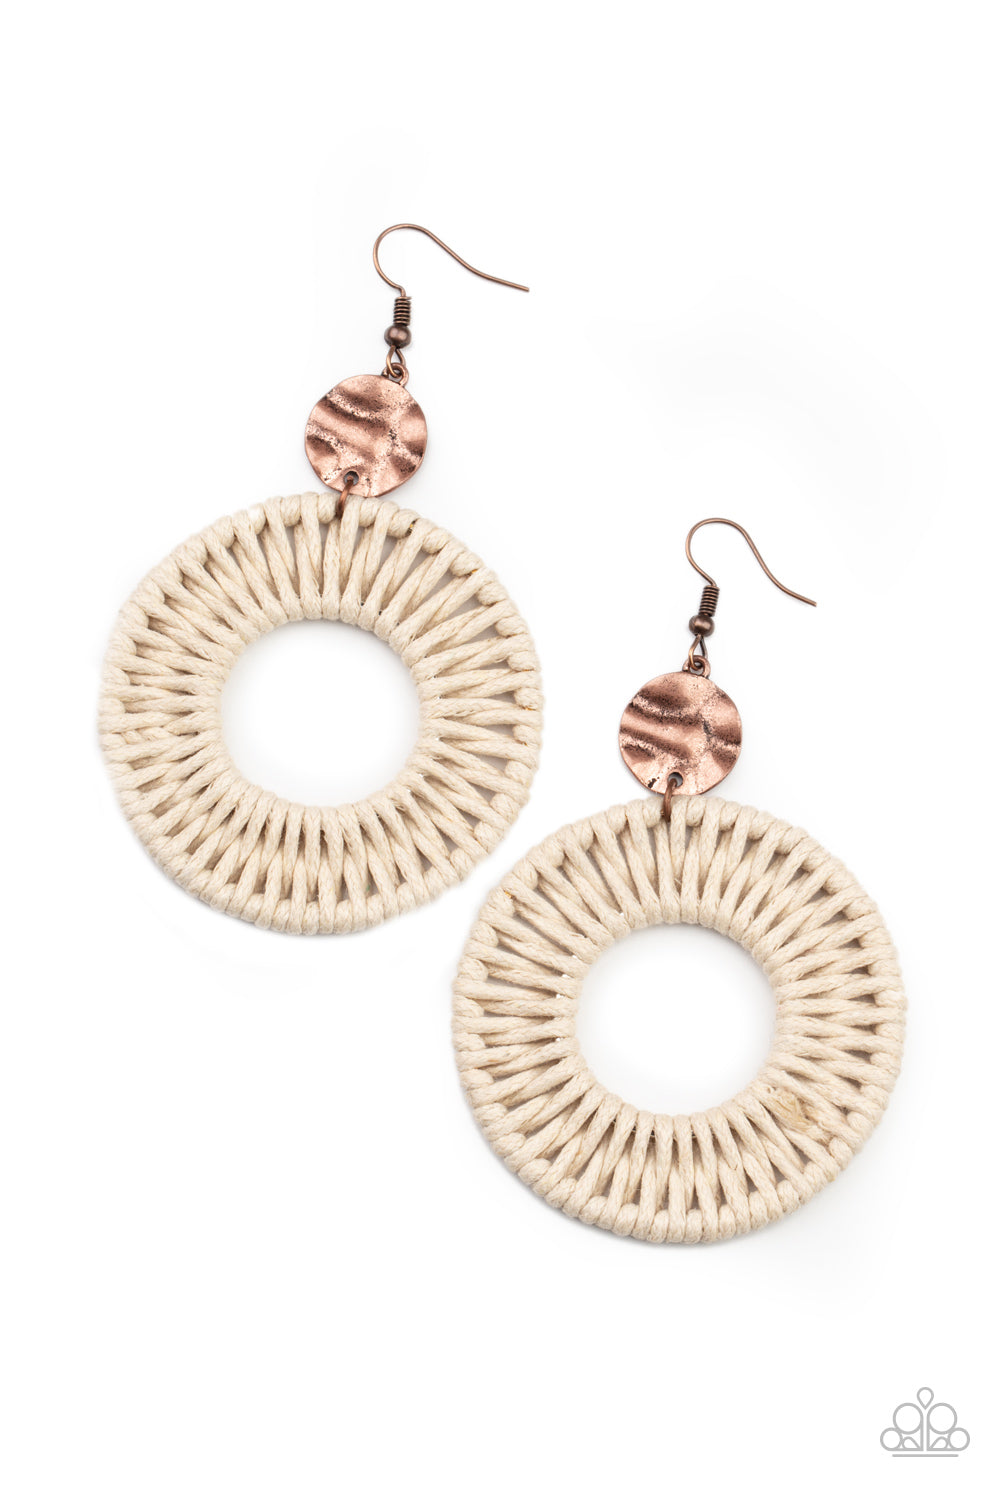 Total Basket Case Earrings - Copper